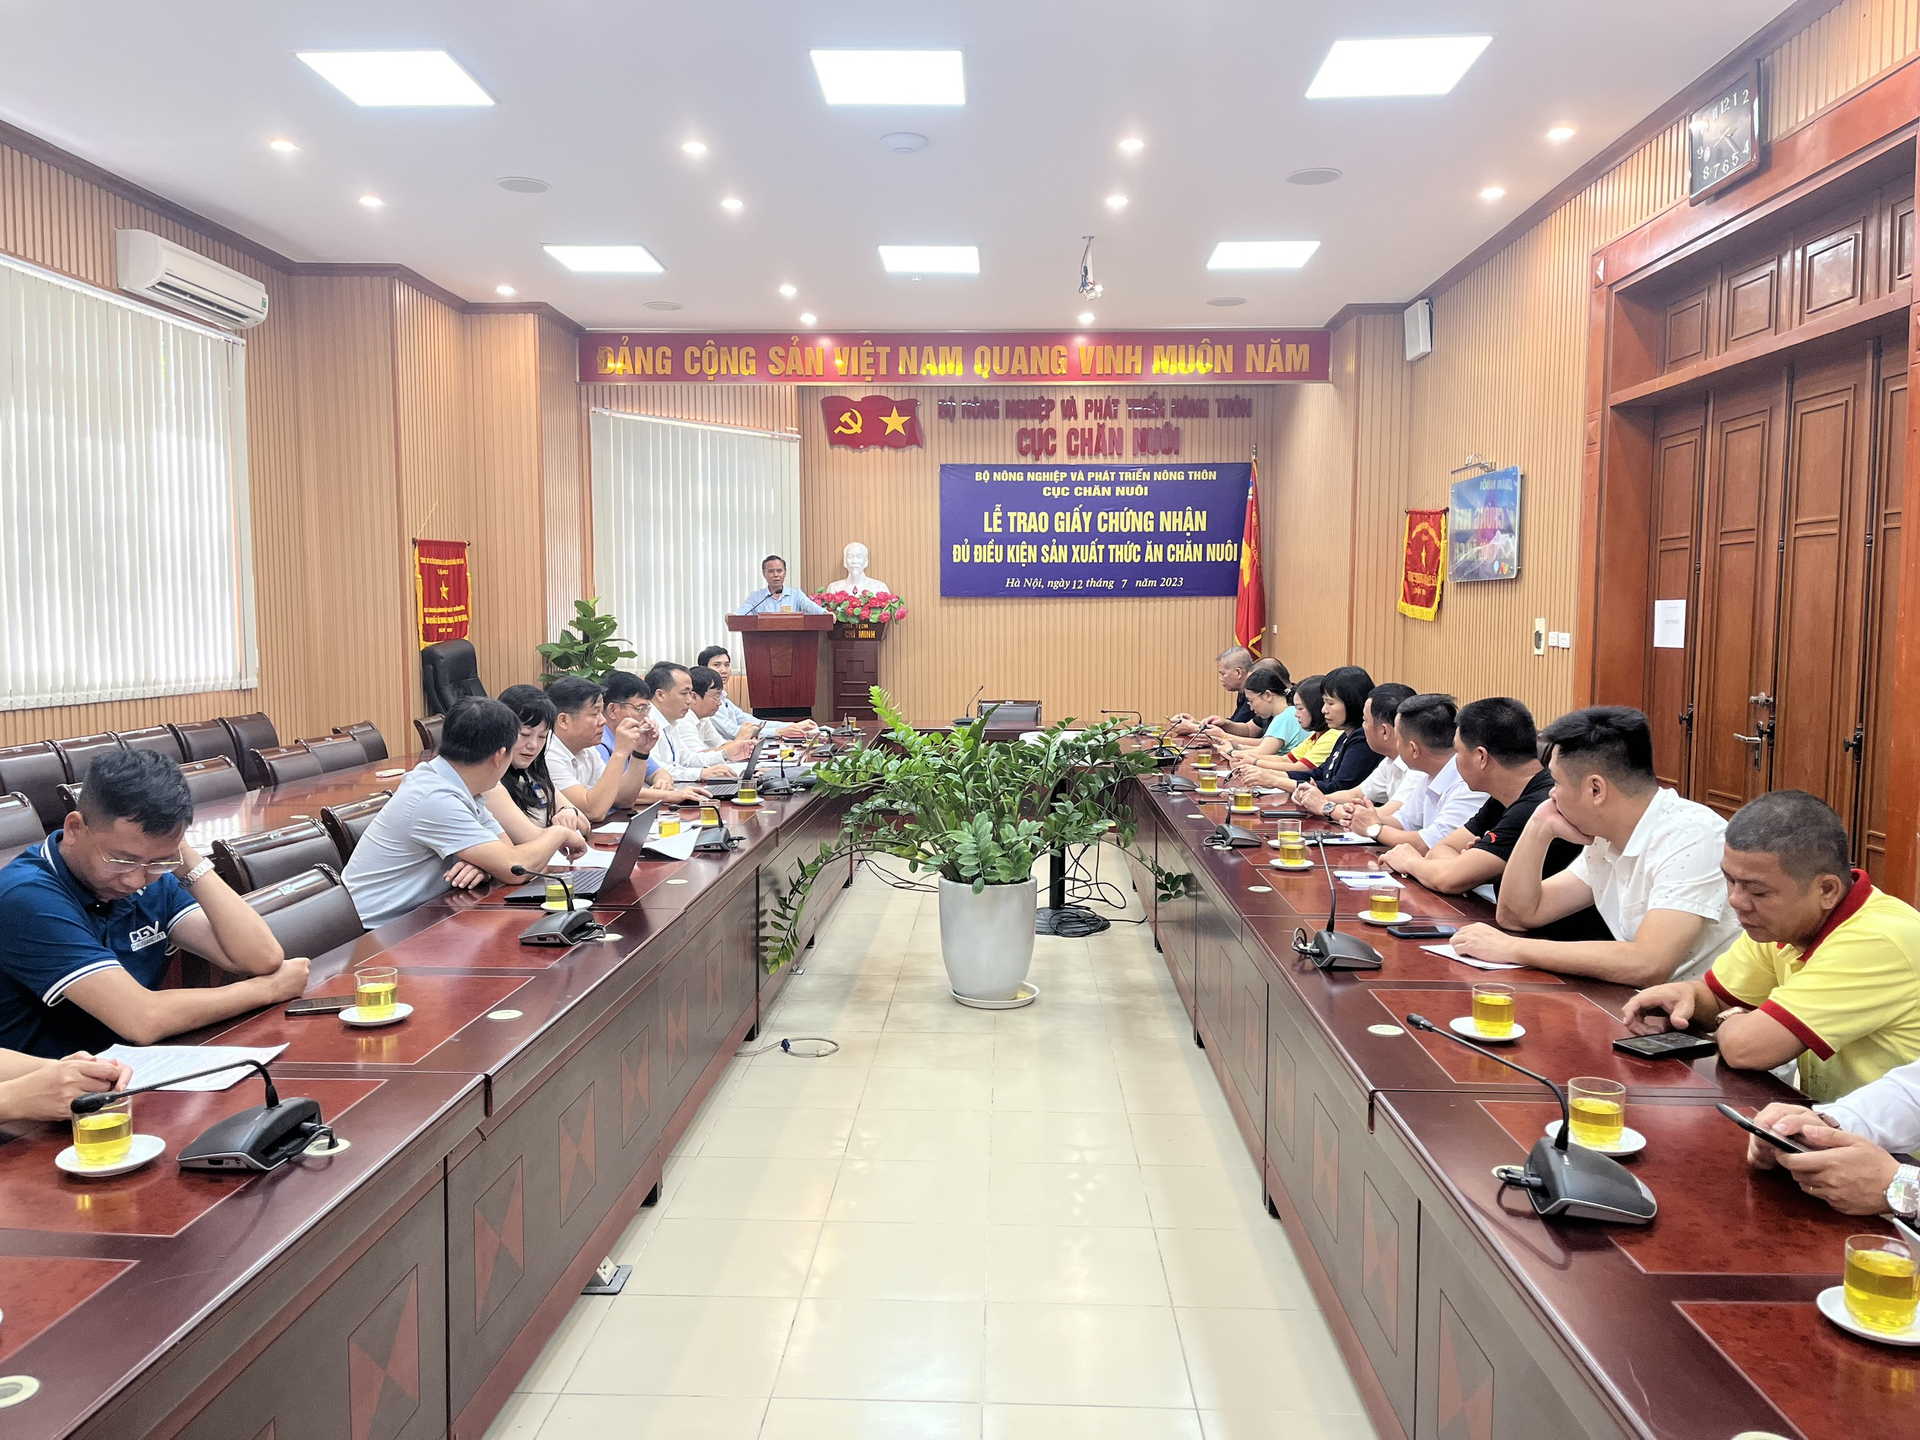 Lễ trao giấy chứng nhận đủ điều kiện sản xuất thức ăn chăn nuôi cho 13 doanh nghiệp được Cục Chăn nuôi tổ chức ngày 12/7 tại Hà Nội. Ảnh: Hồng Thắm